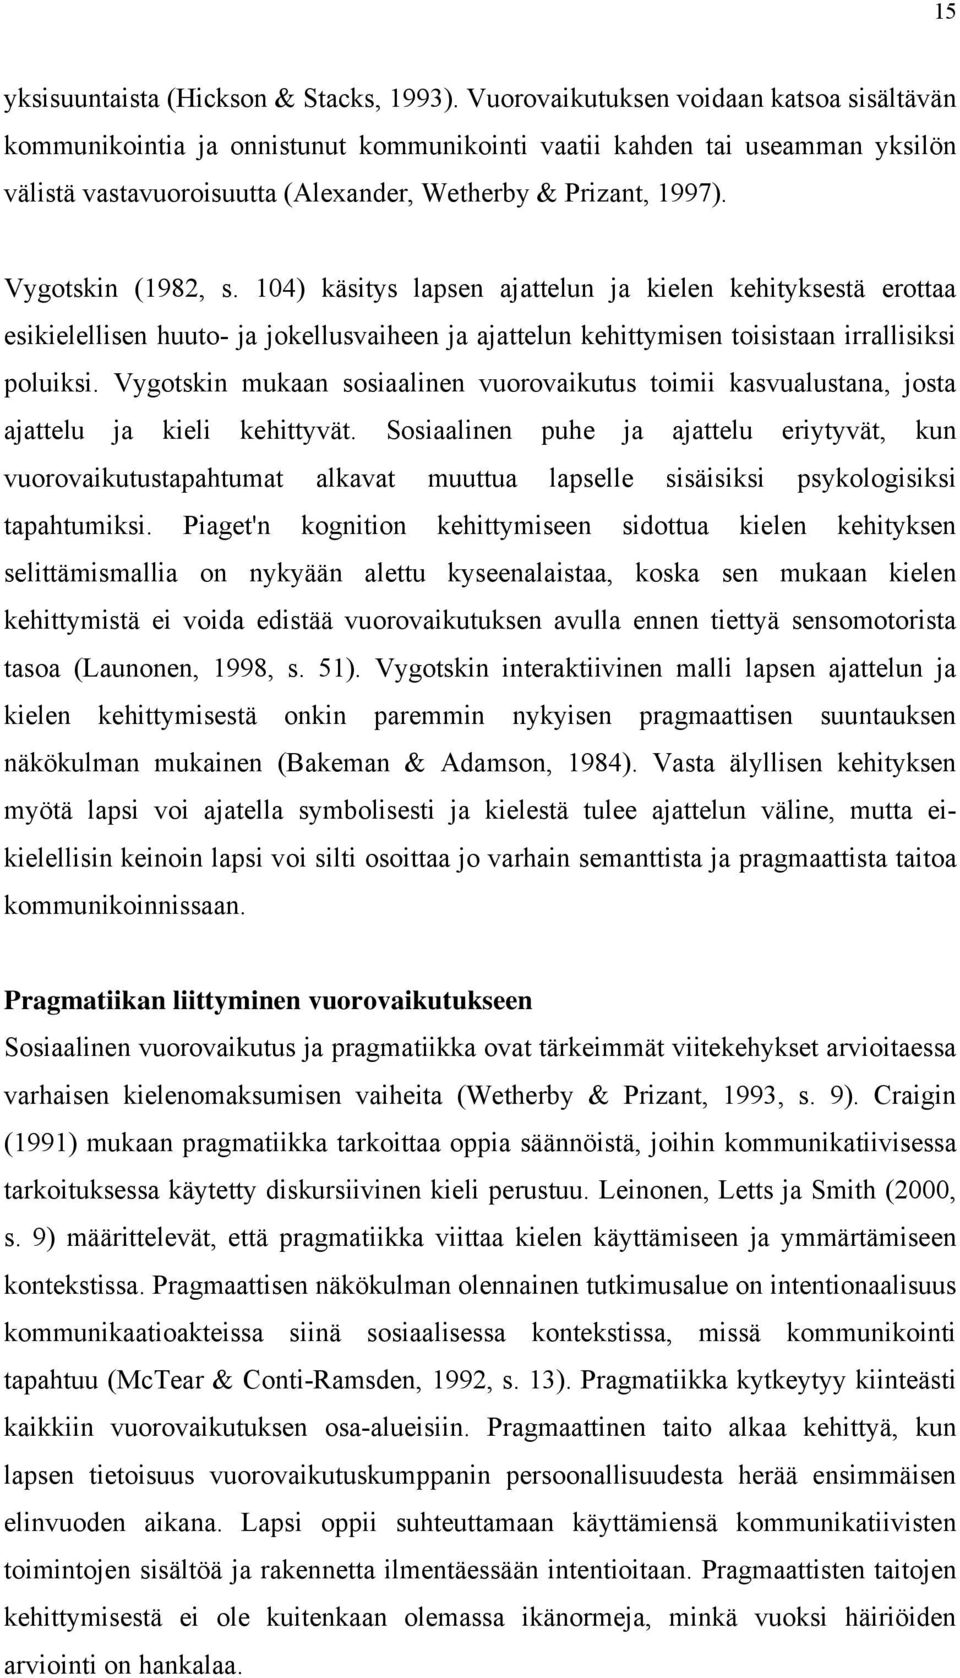 Vygotskin (1982, s. 104) käsitys lapsen ajattelun ja kielen kehityksestä erottaa esikielellisen huuto- ja jokellusvaiheen ja ajattelun kehittymisen toisistaan irrallisiksi poluiksi.